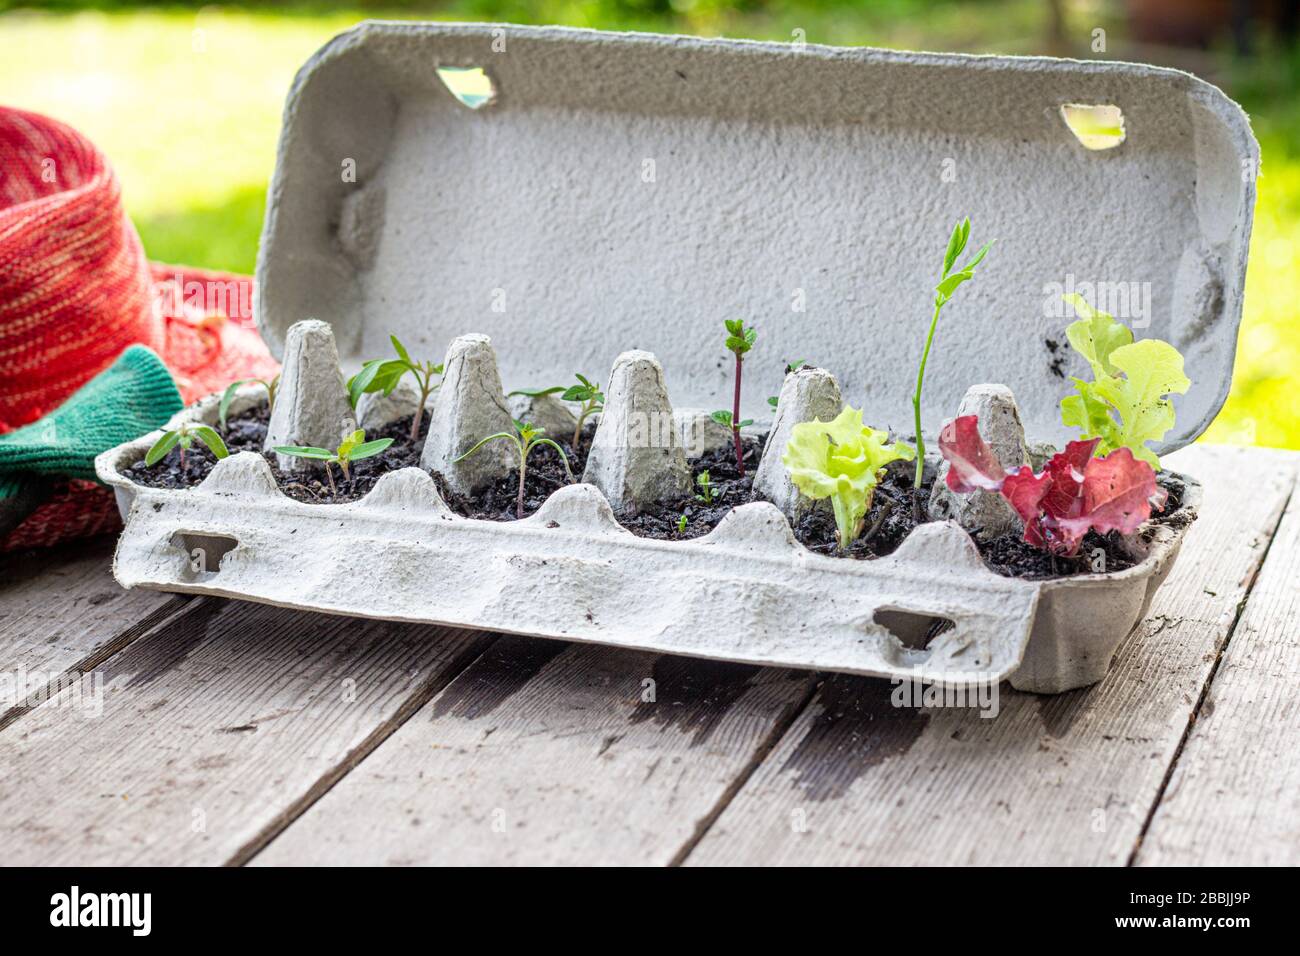 Piantine vegetali che crescono in scatola d'uovo riutilizzata fuori sul tavolo da giardino. Riciclate, riutilizzate per ridurre i rifiuti e far crescere il vostro cibo. Foto Stock